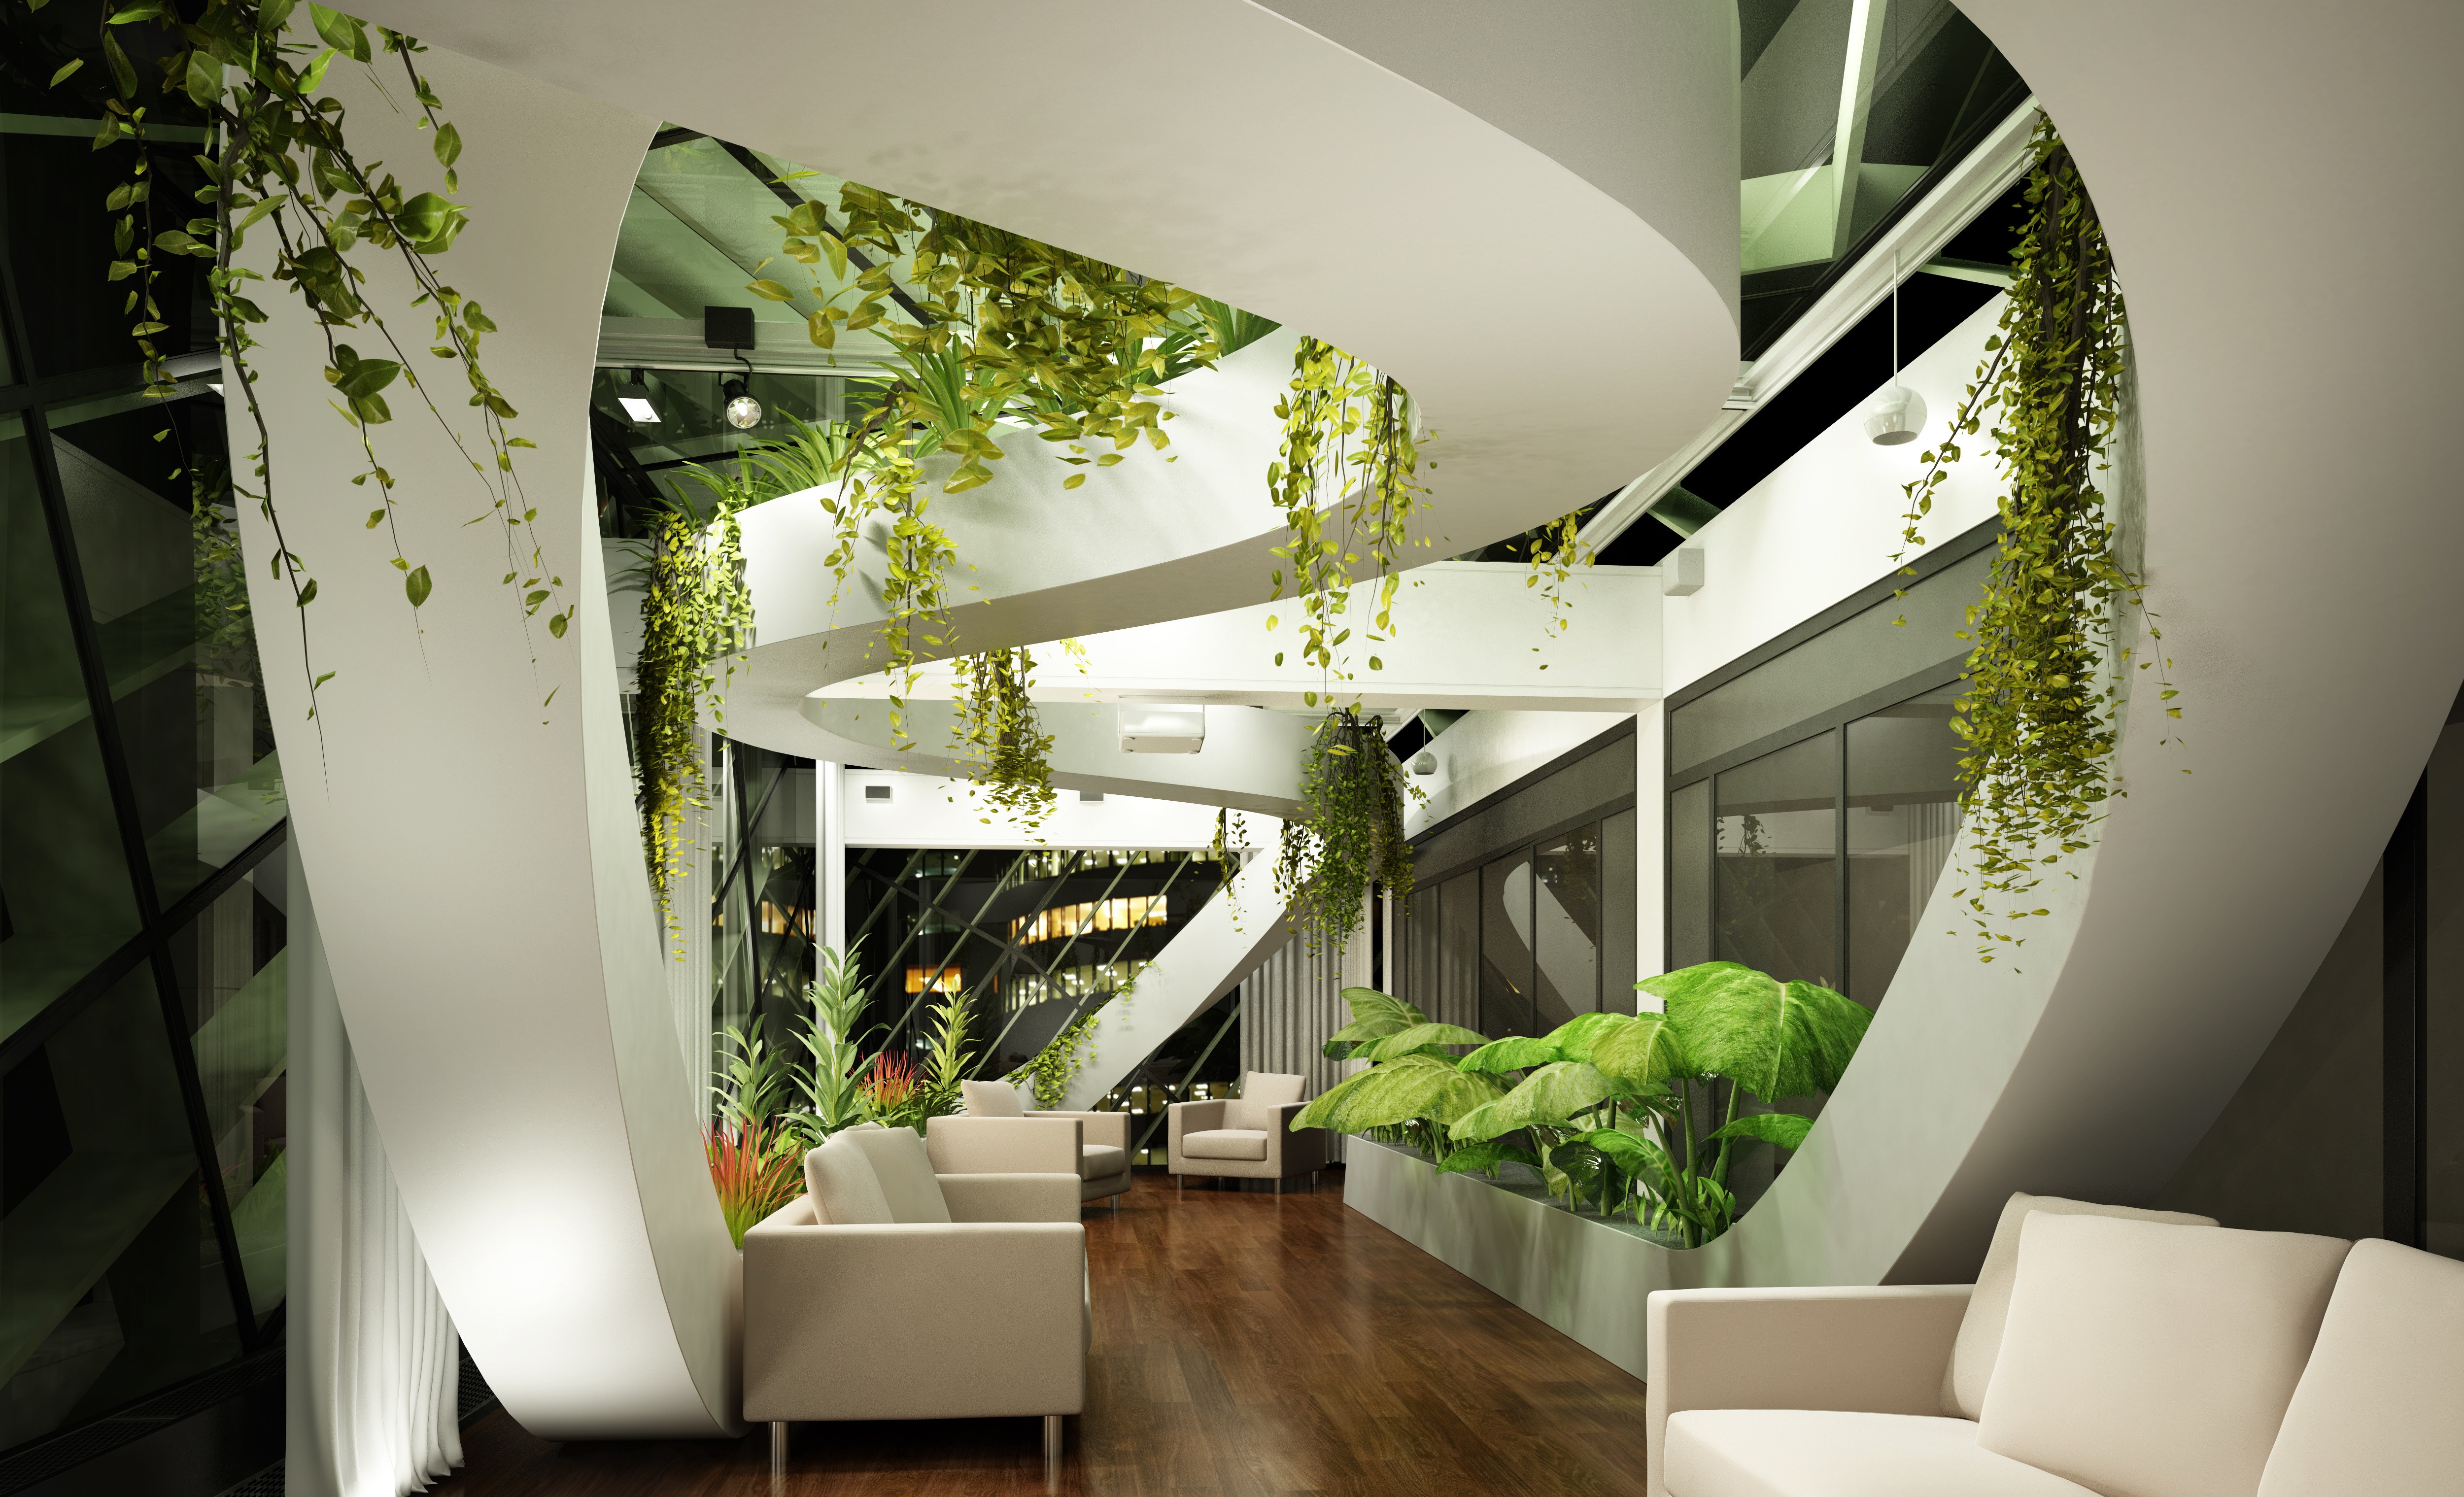 Wallpaper Living Room Design High Tech Modern Plants Light